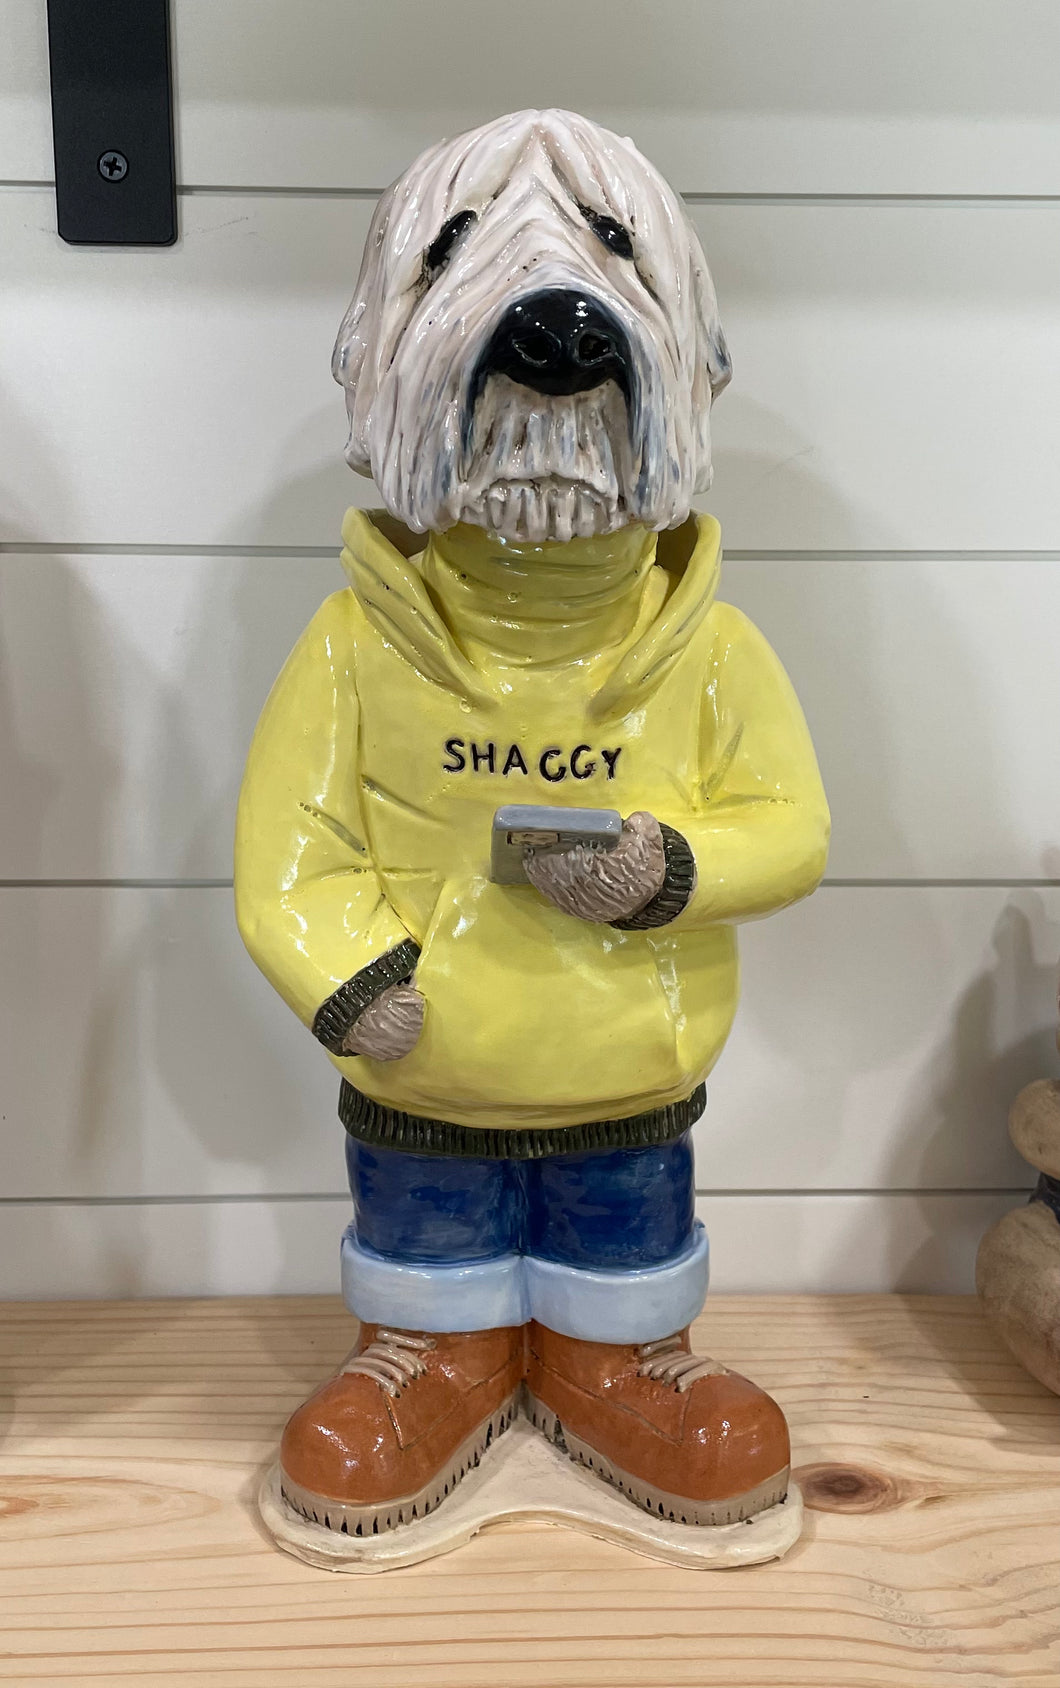 Shaggy dog sculpture 